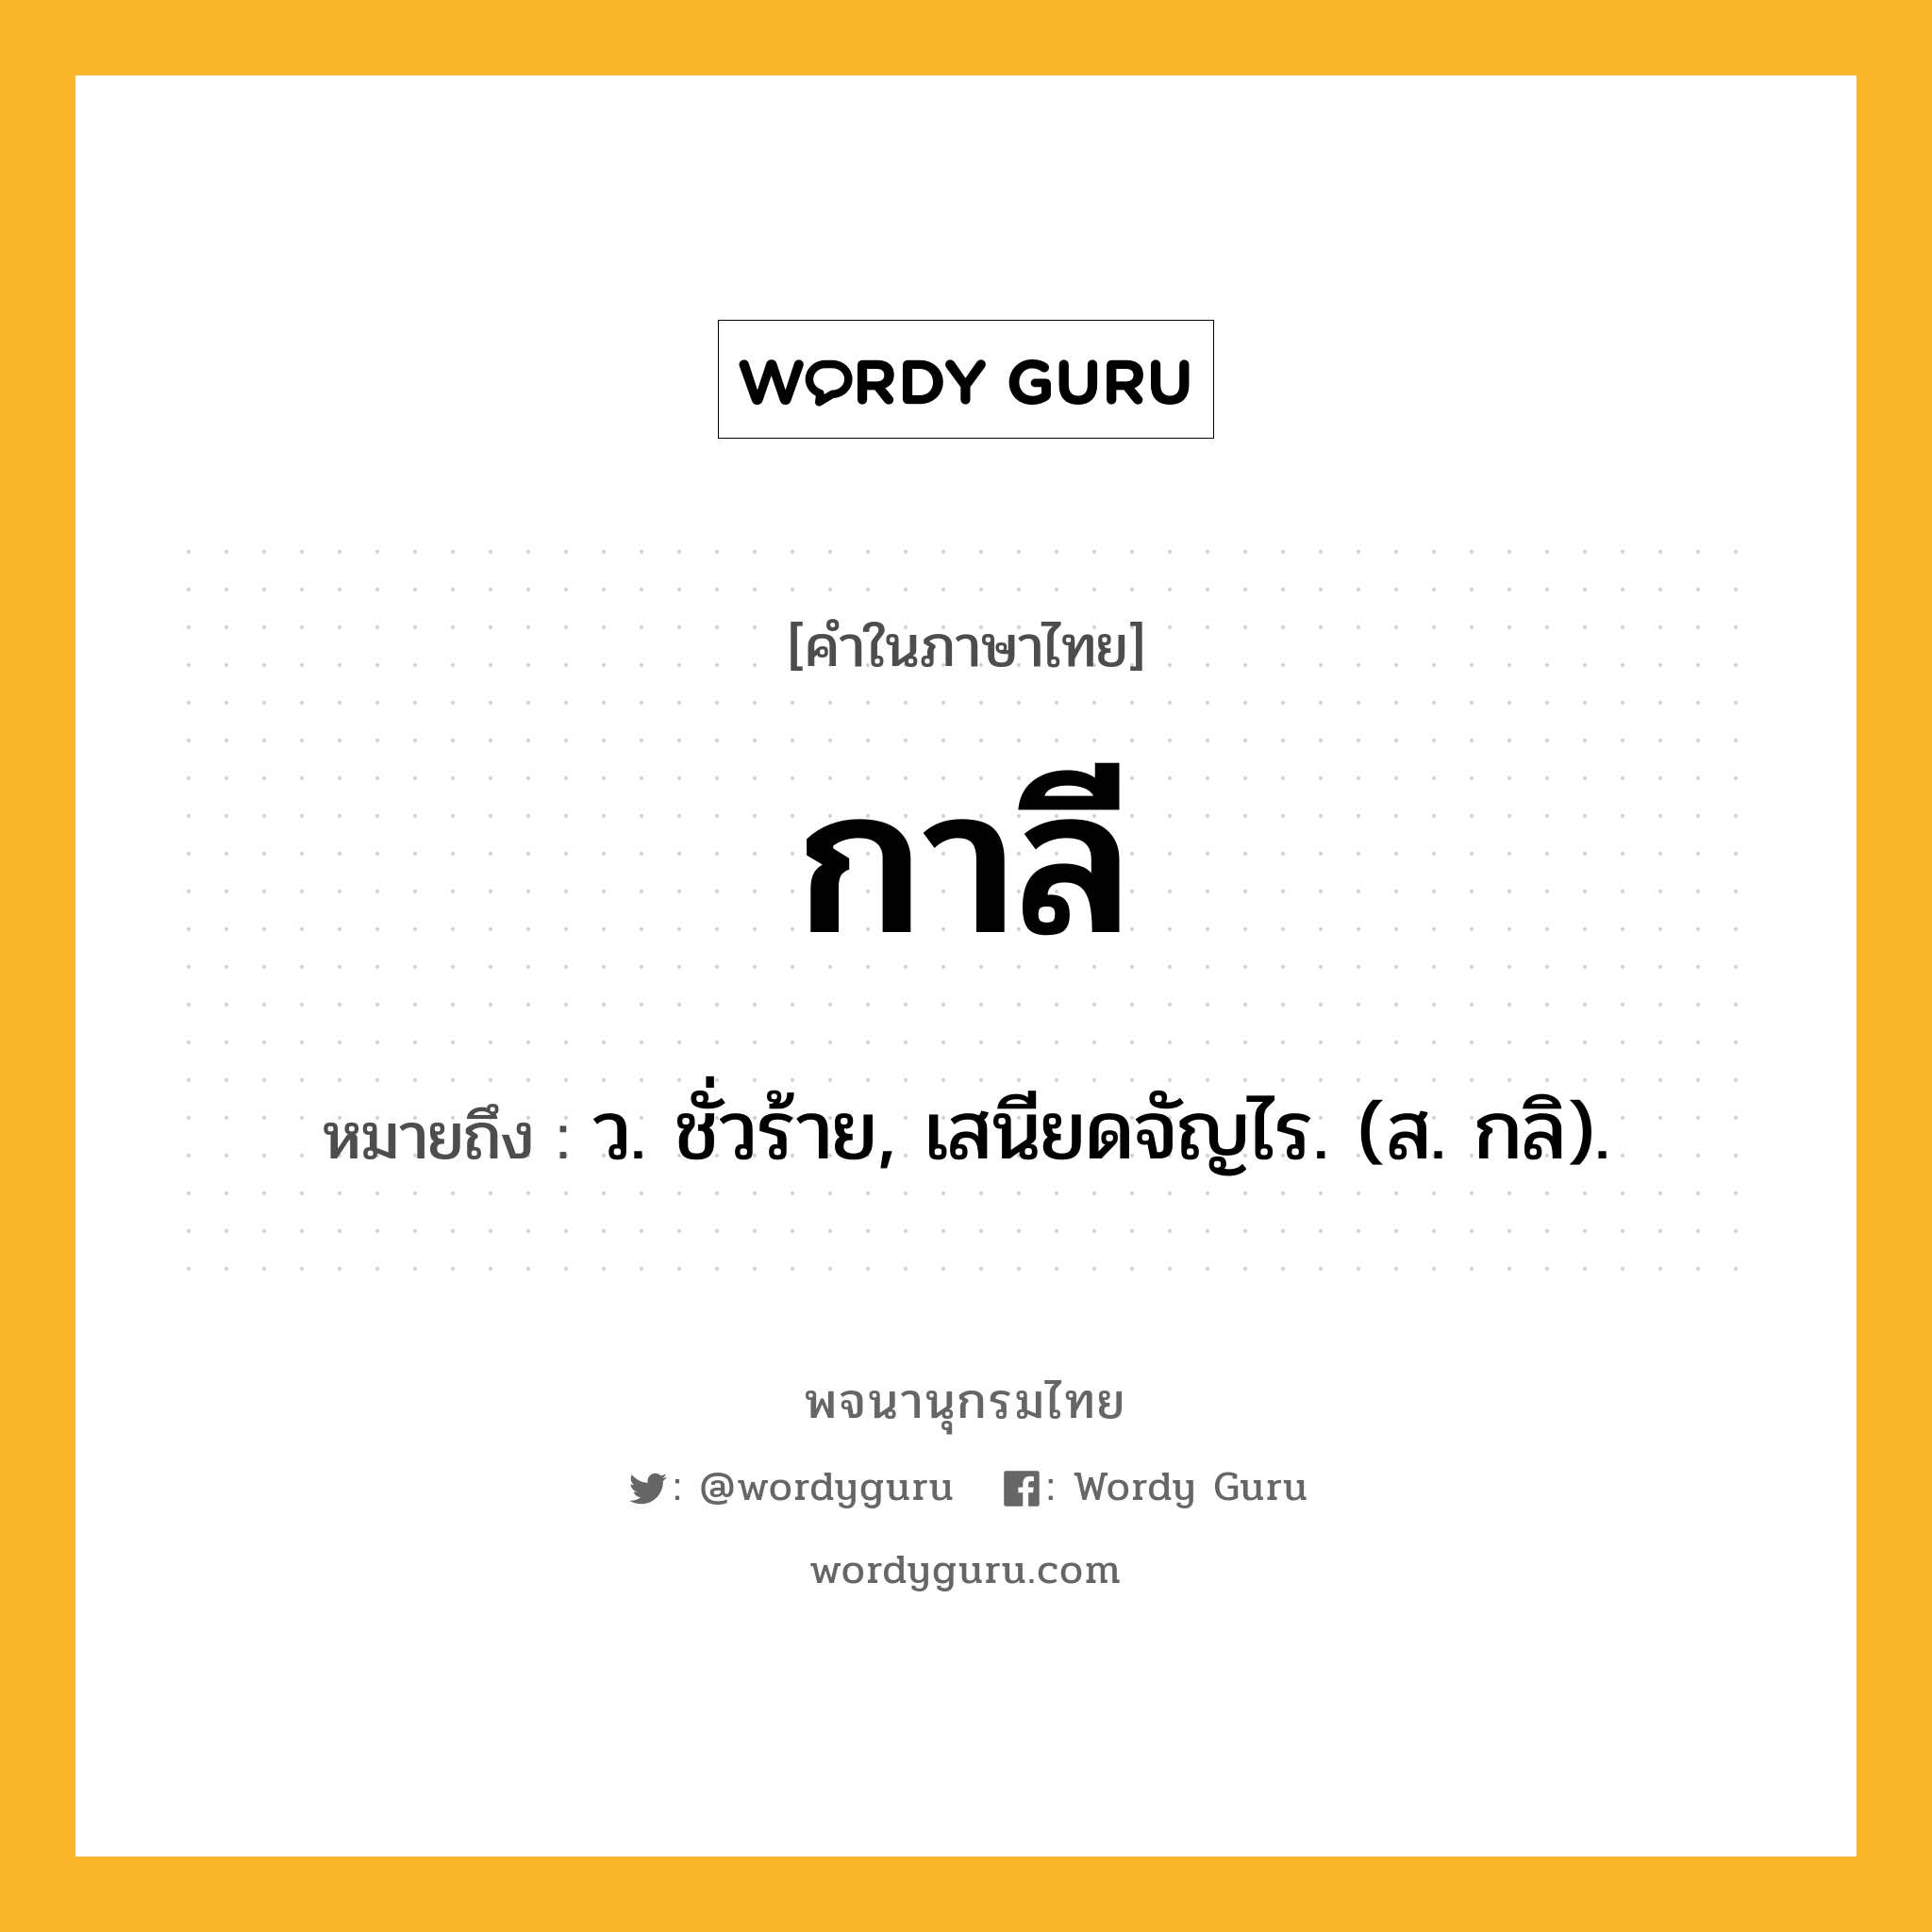 กาลี ความหมาย หมายถึงอะไร?, คำในภาษาไทย กาลี หมายถึง ว. ชั่วร้าย, เสนียดจัญไร. (ส. กลิ).